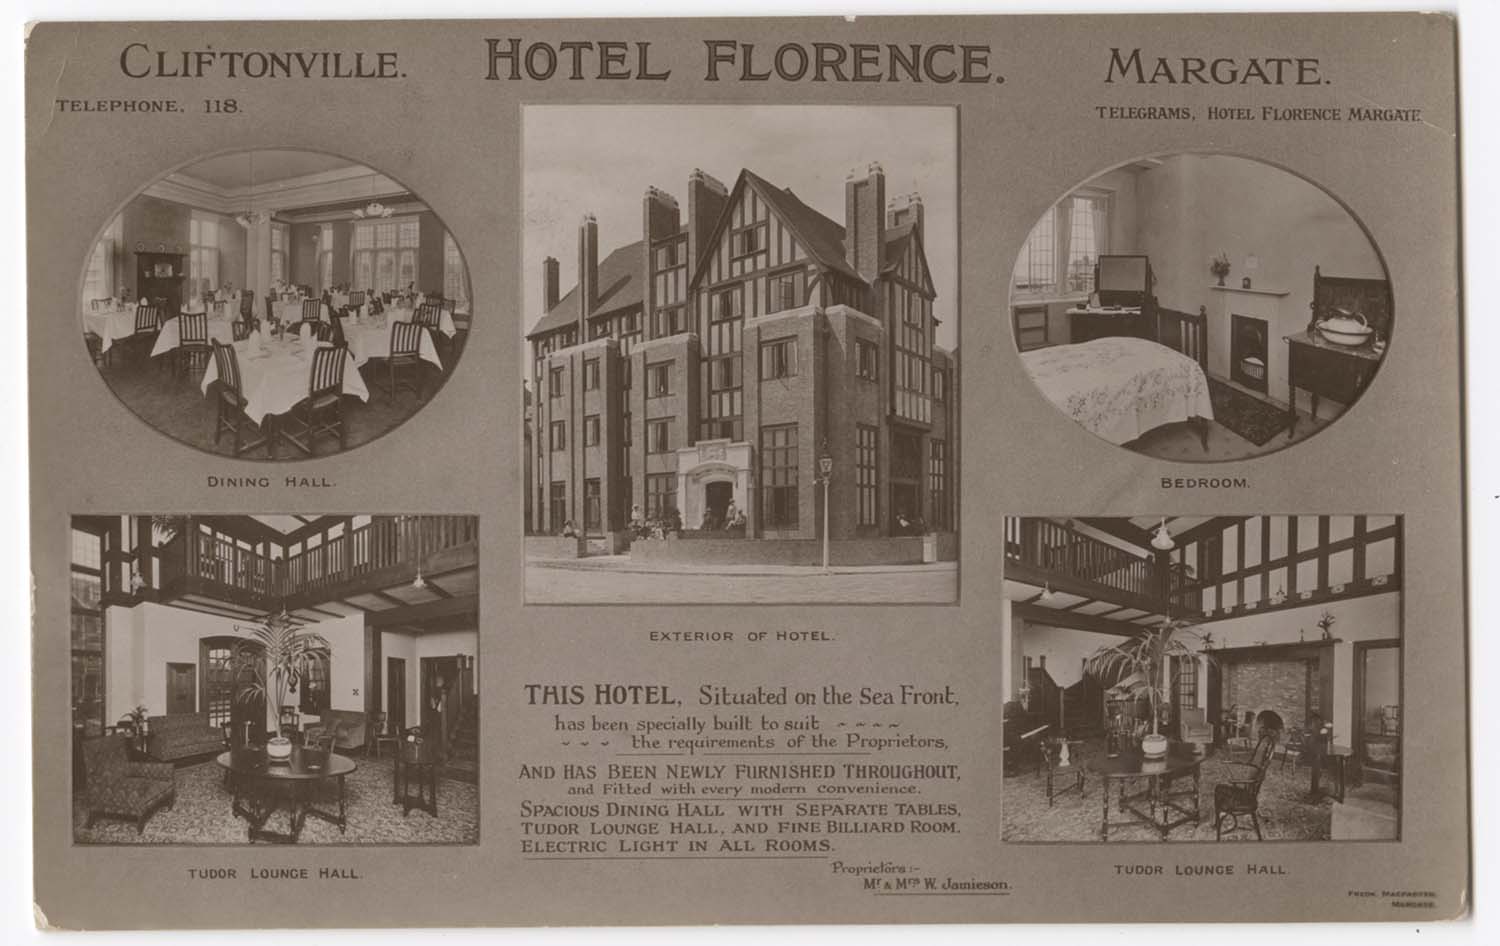 Hotel Florence Margate | Margate History